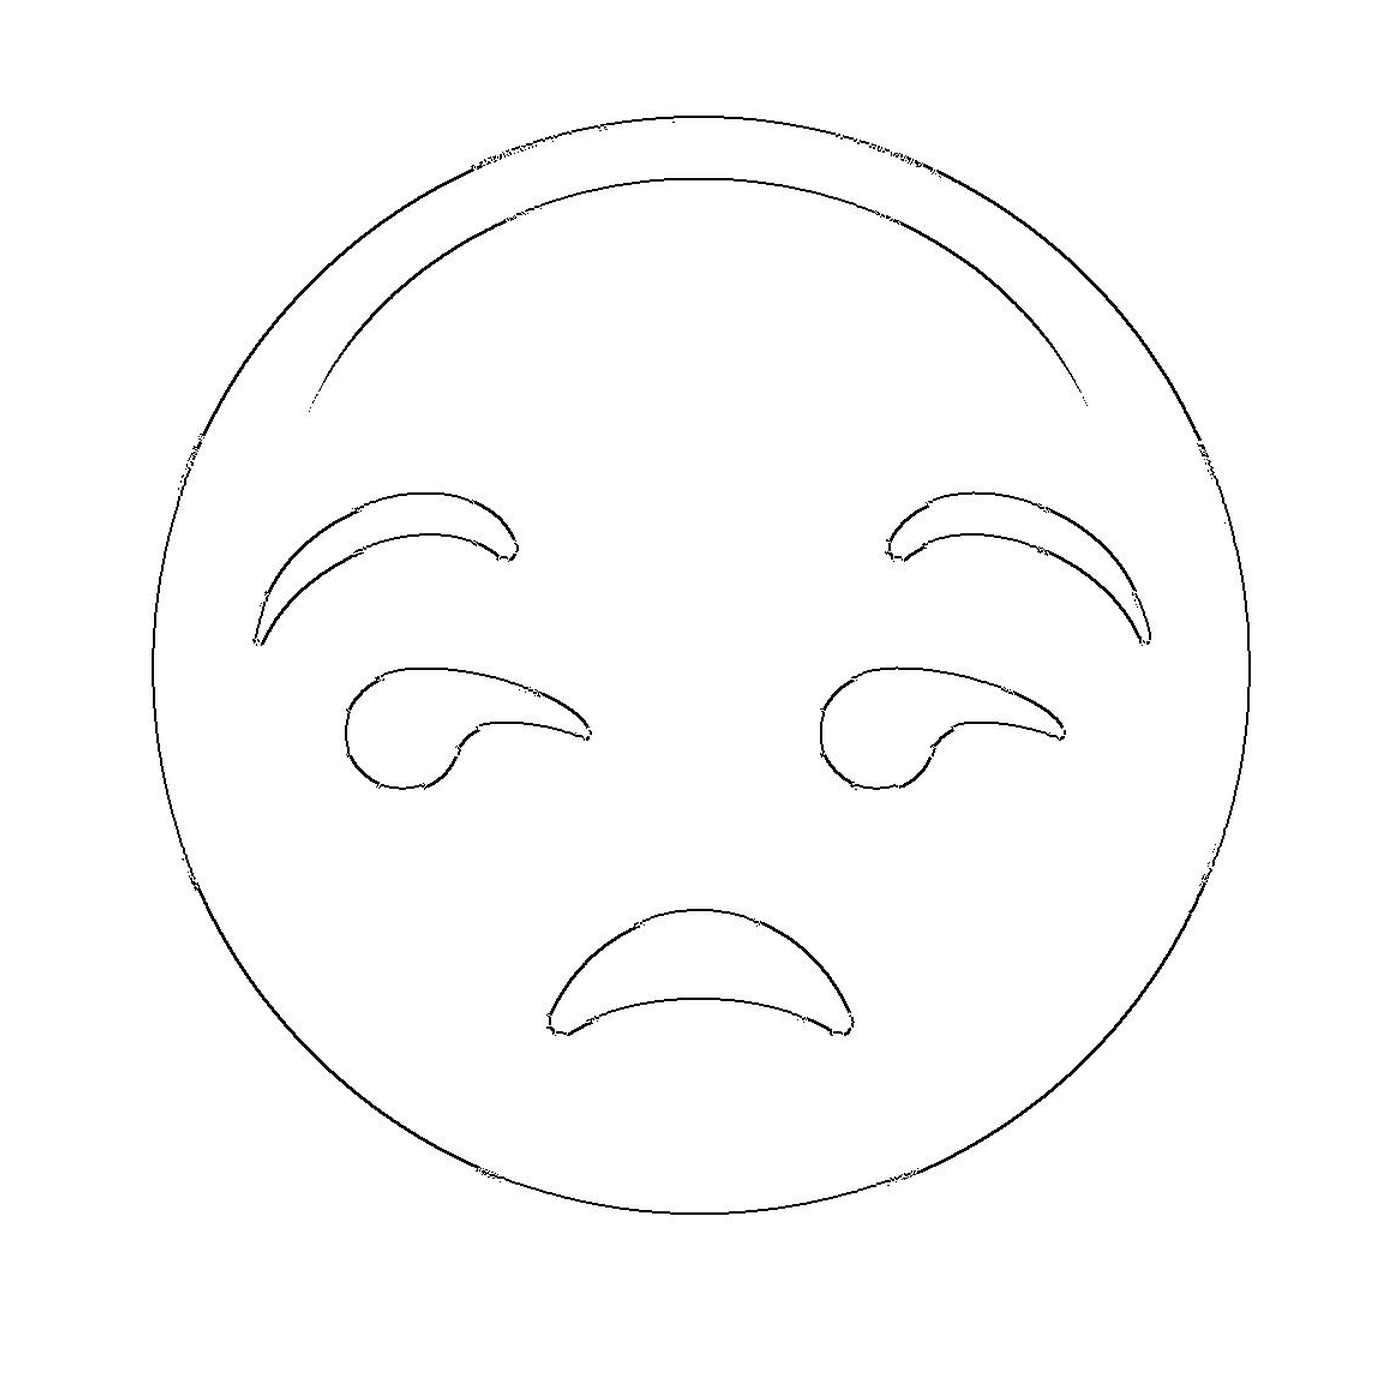  Ein trauriges Gesicht gezeichnet 